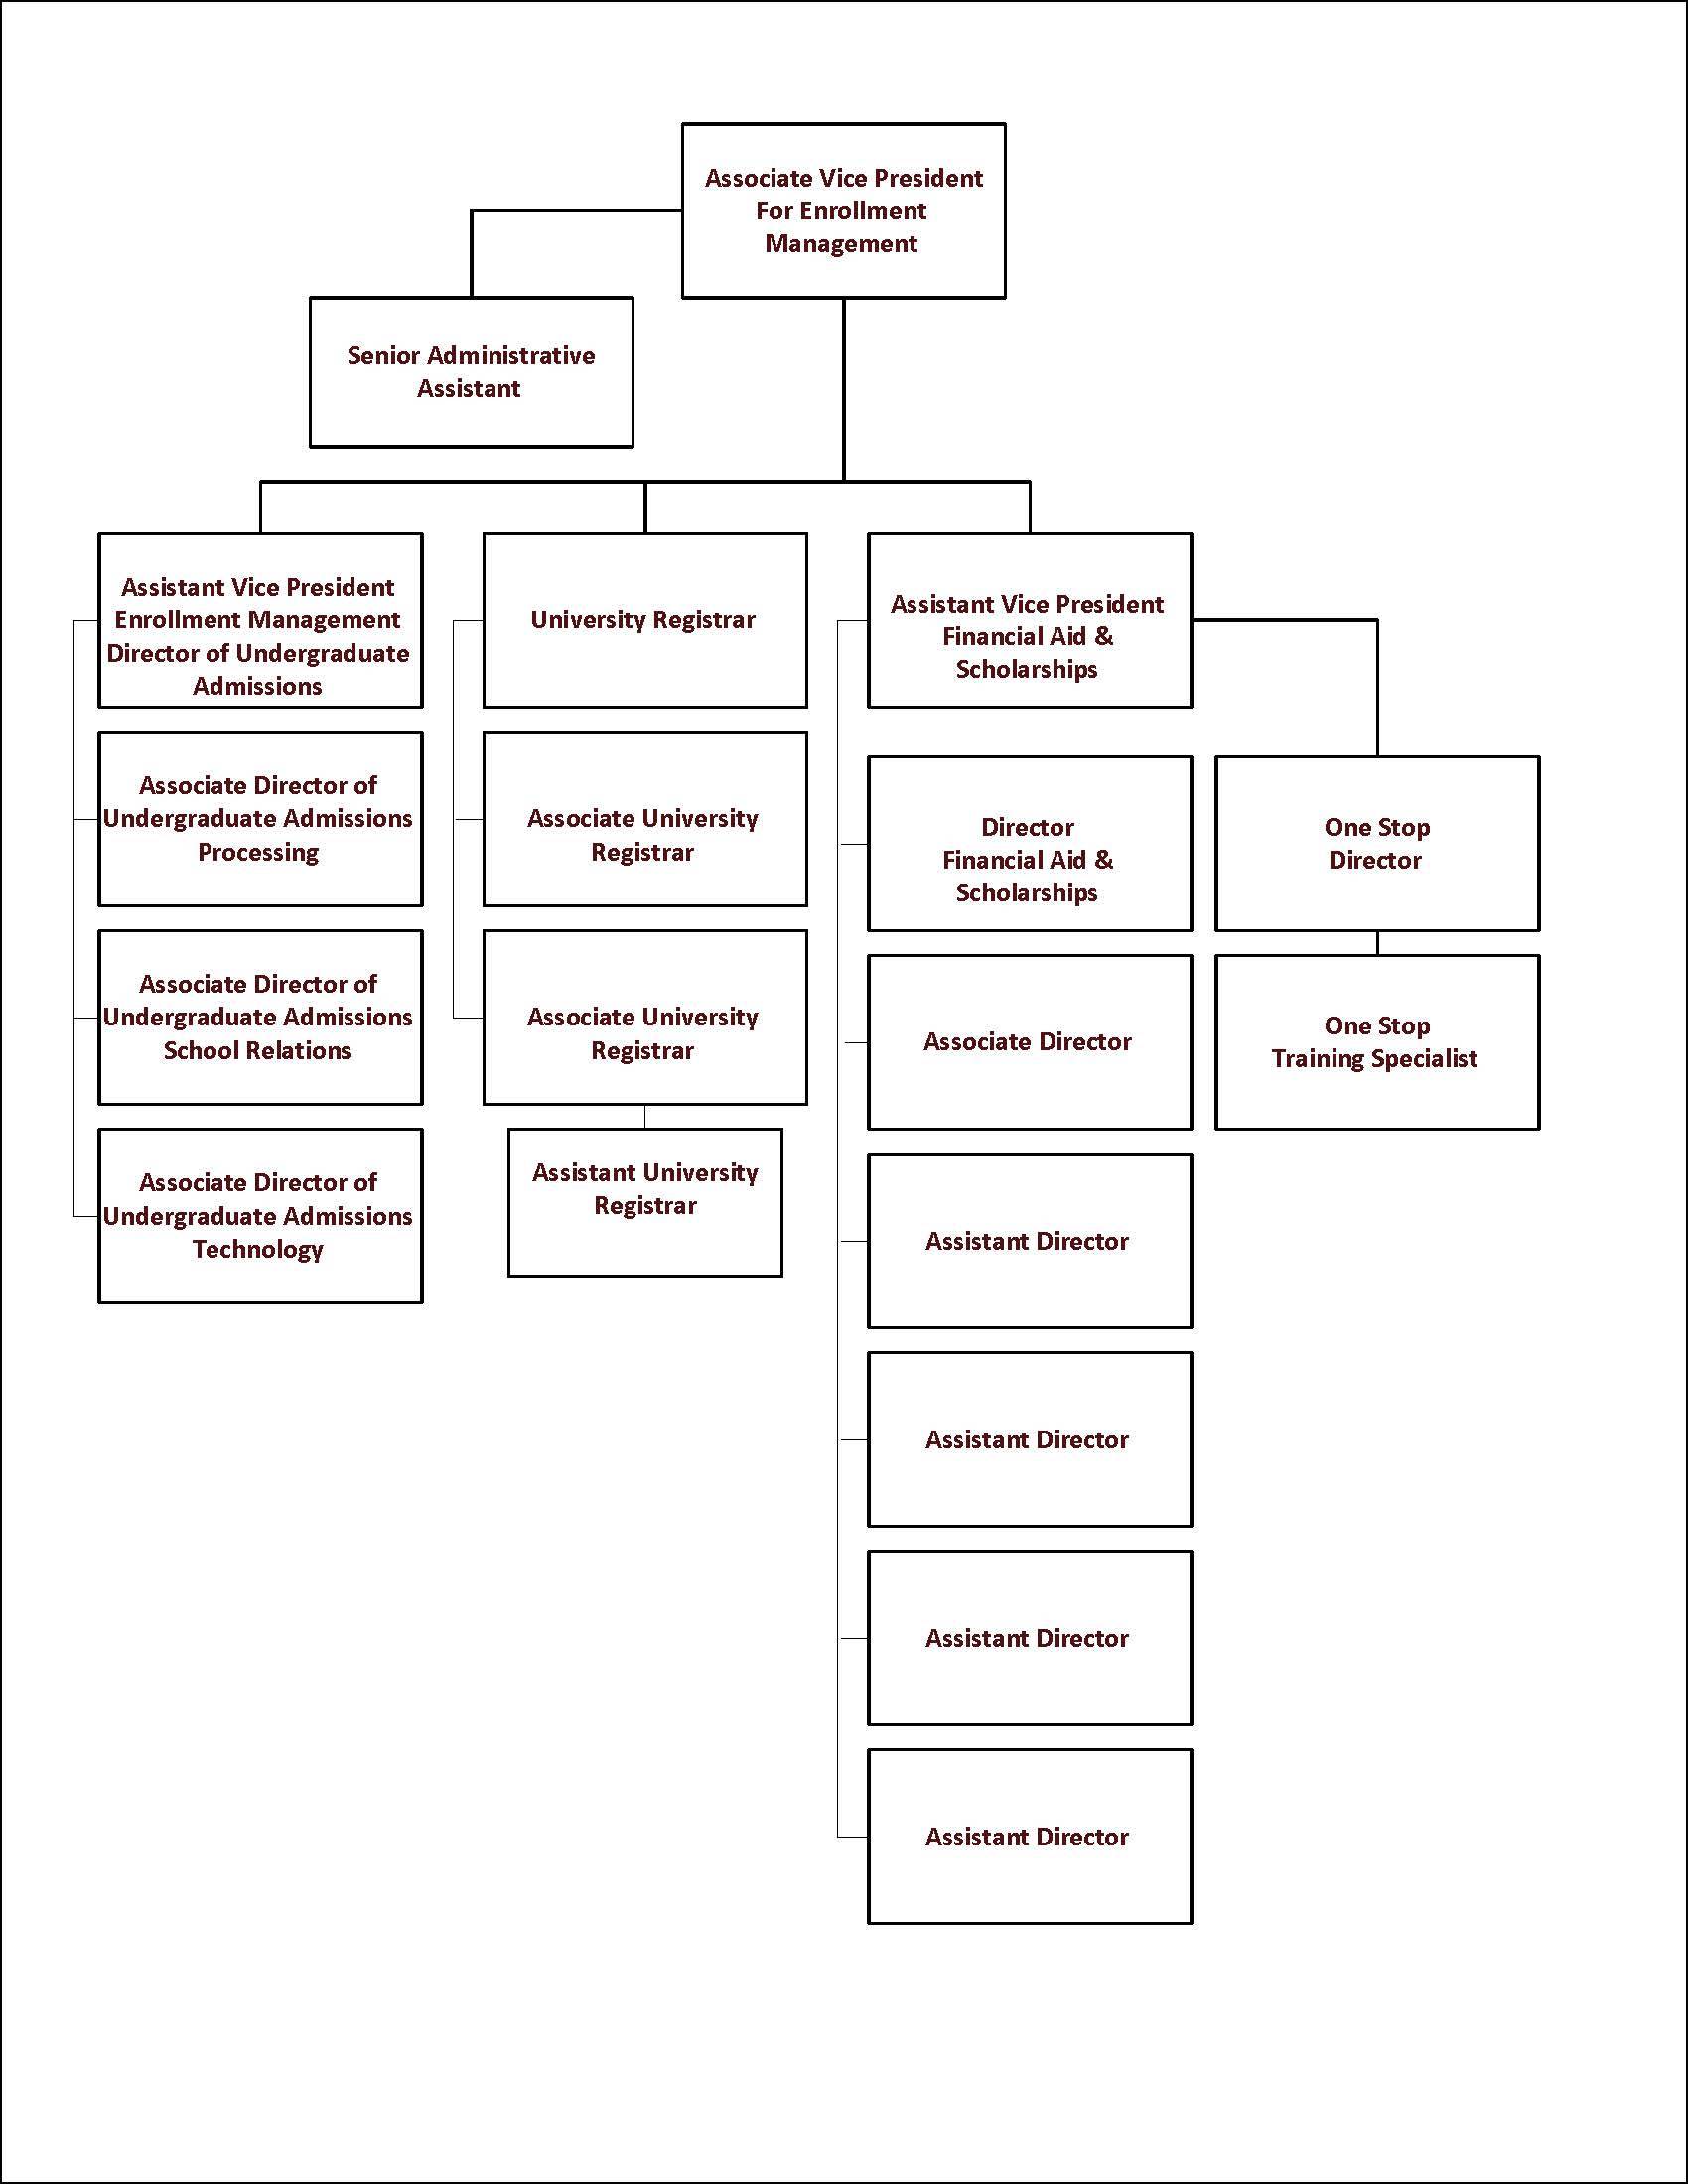 Enrollment Management organizational chart